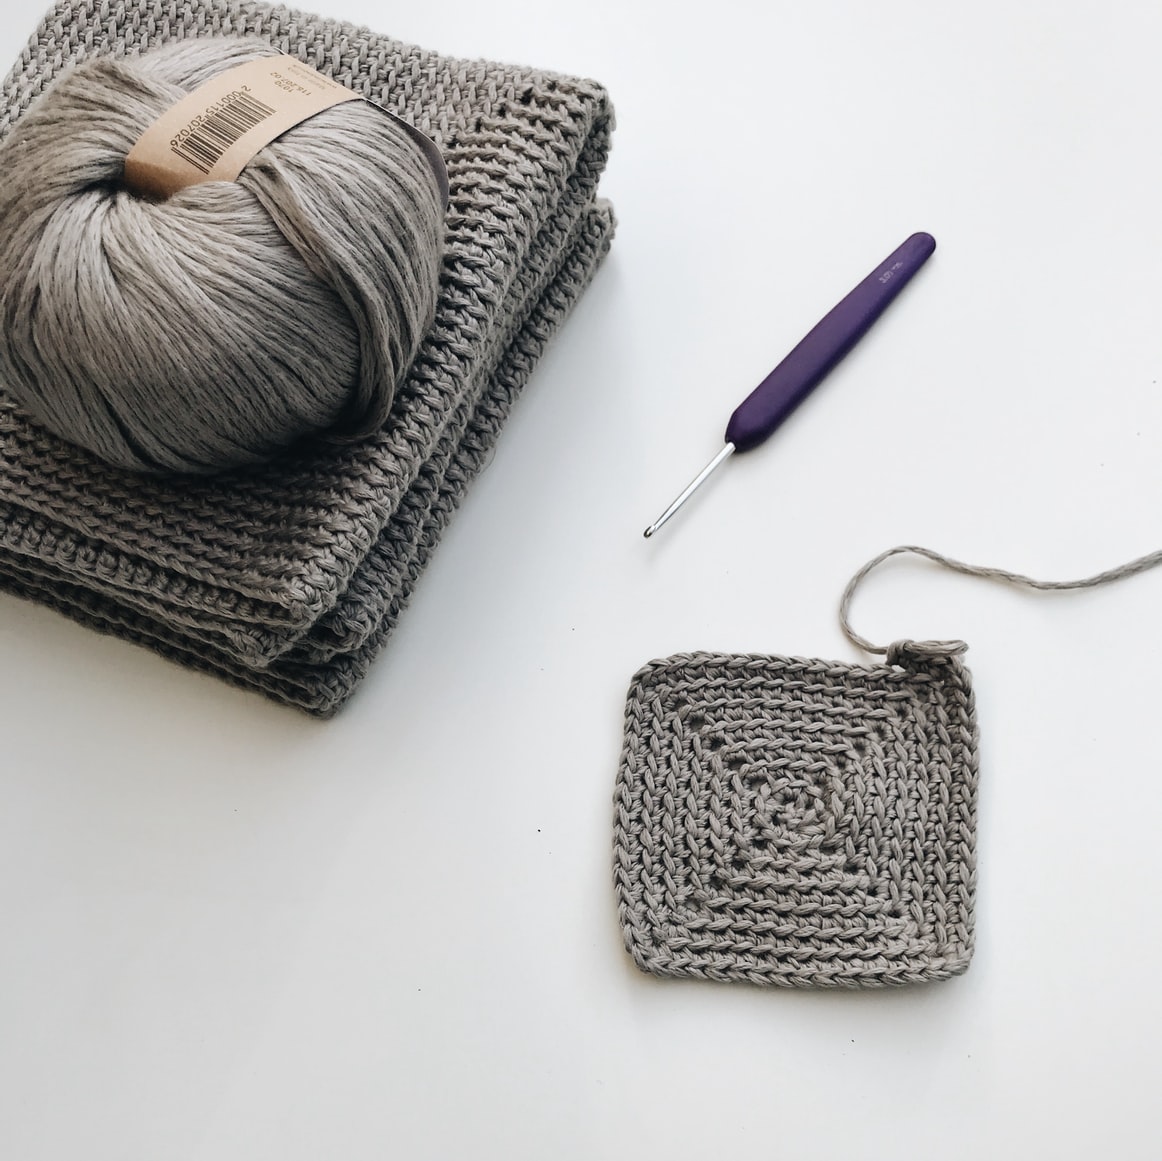 Buy Crochet hooks for knitting and crochet